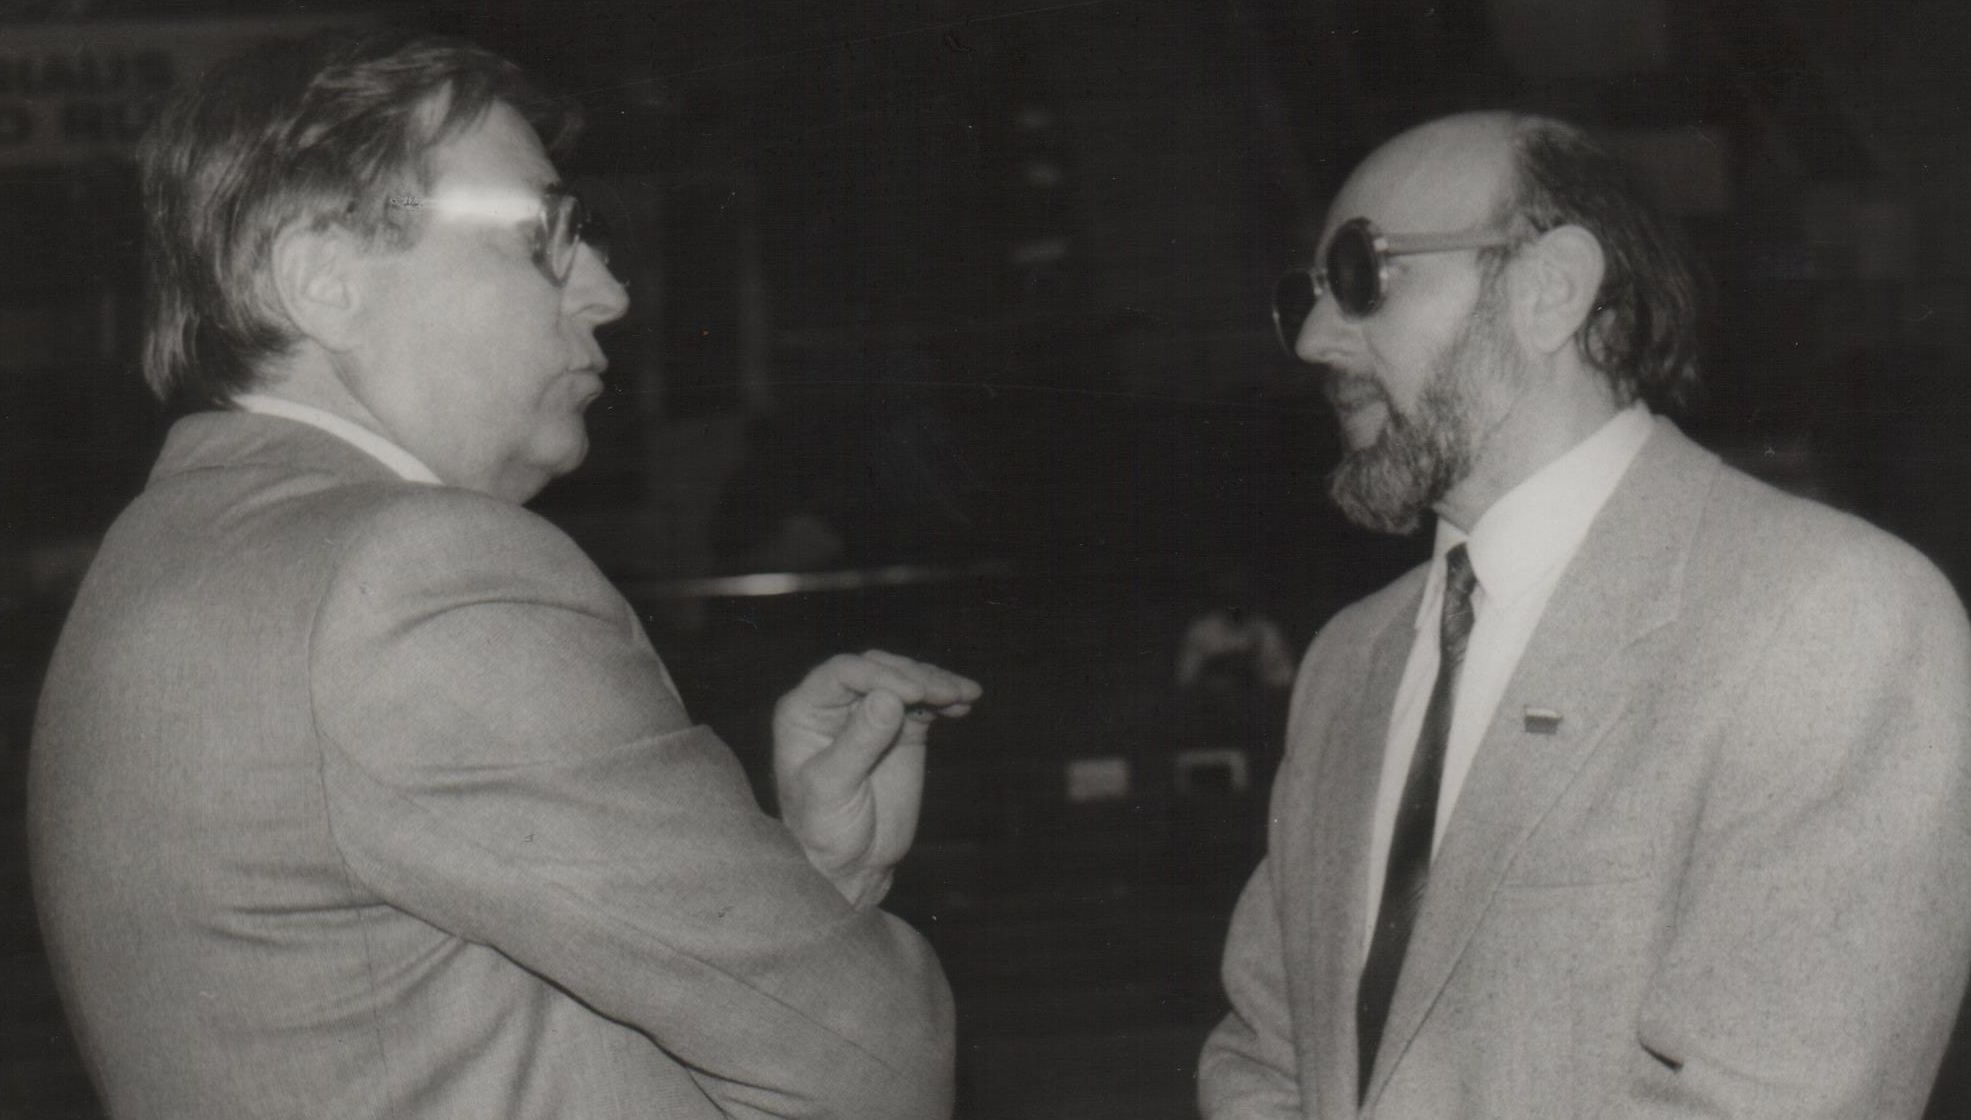 Pokalbis su Sąjūdžio Seimo nariu prof. A. Zalatoriumi Aukščiausiojoje Taryboje. 1990 m. sausis.